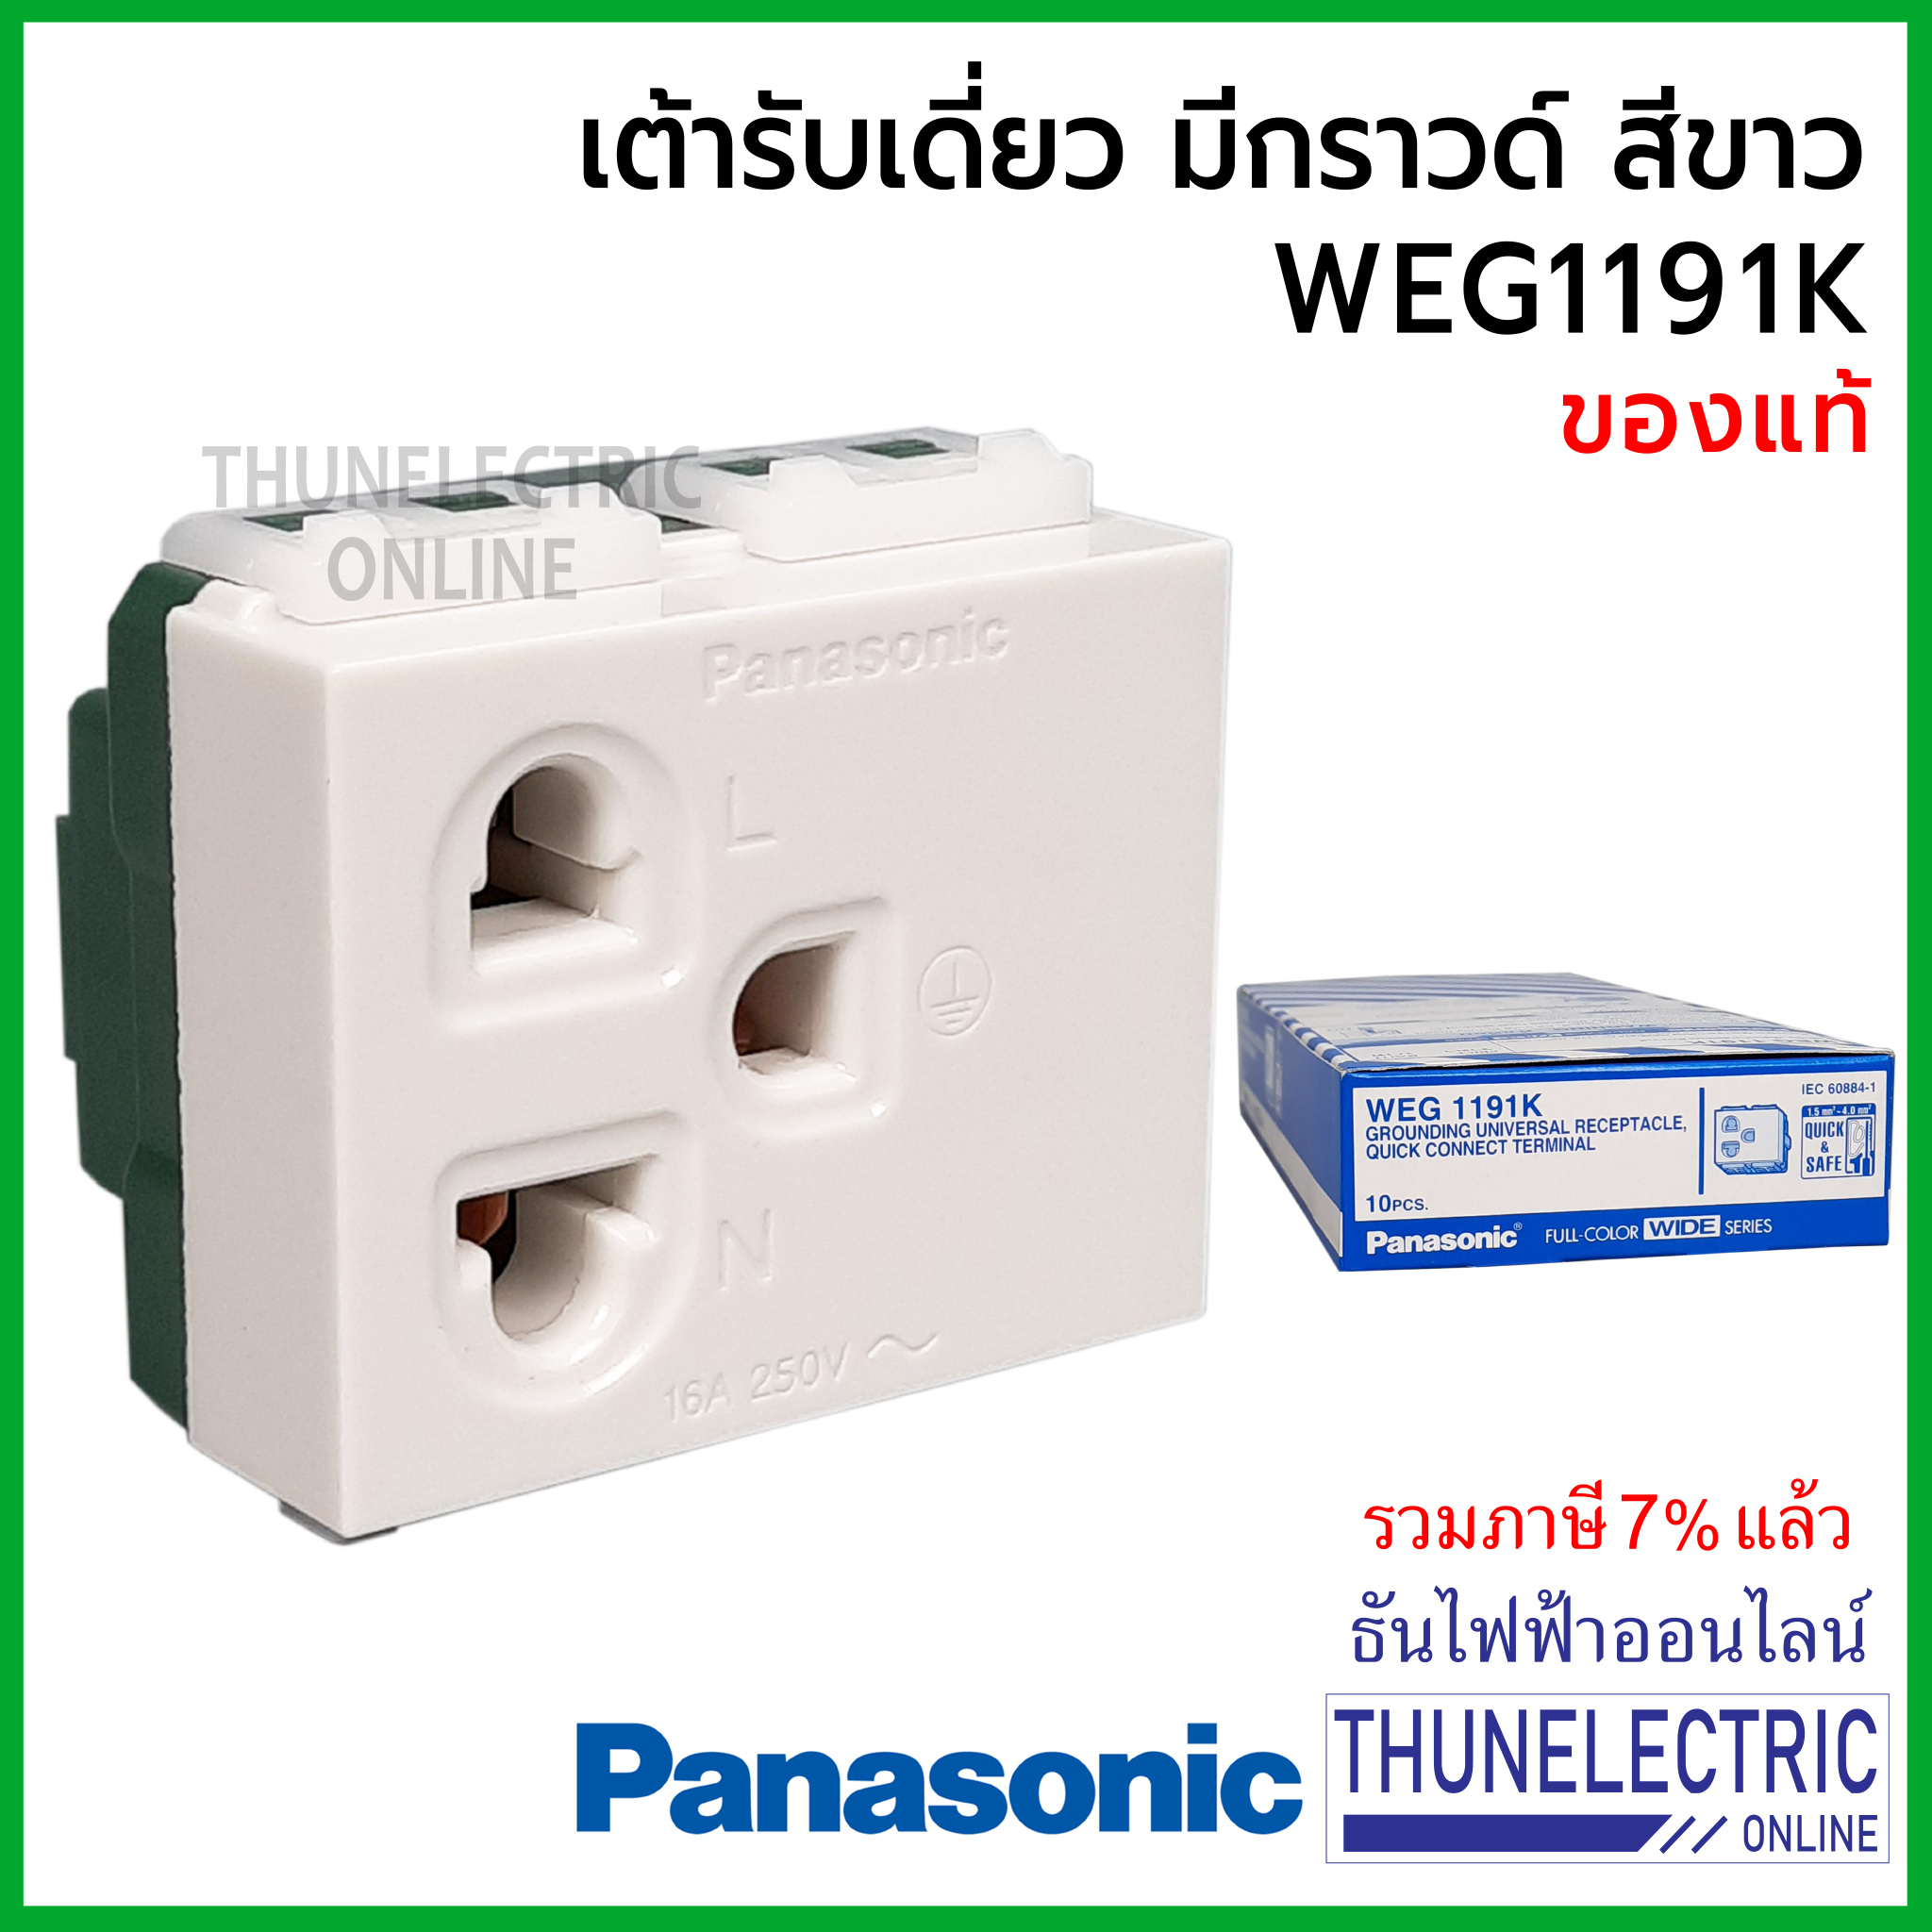 Panasonic WEG1191K เต้ารับเดี่ยวมีกราวด์ สีขาว ธันไฟฟ้า